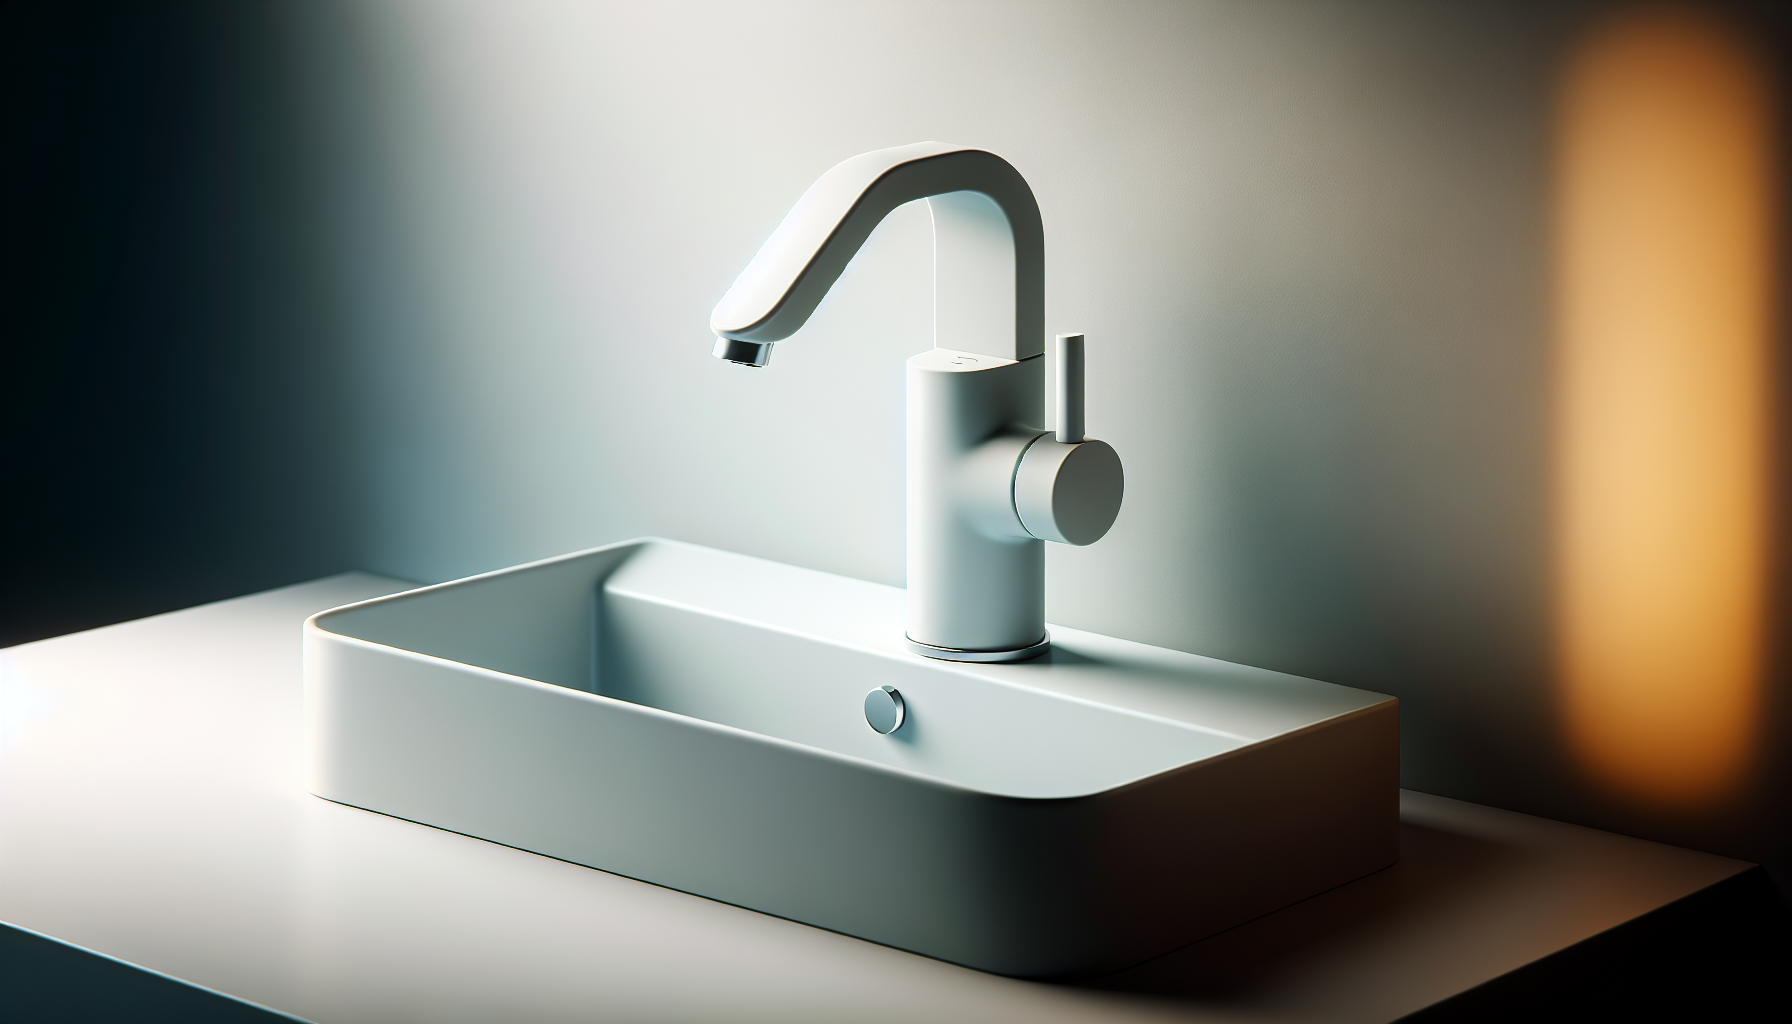 Minimalistisches Design einer weißen Waschtischarmatur mit ergonomischer Bedienung